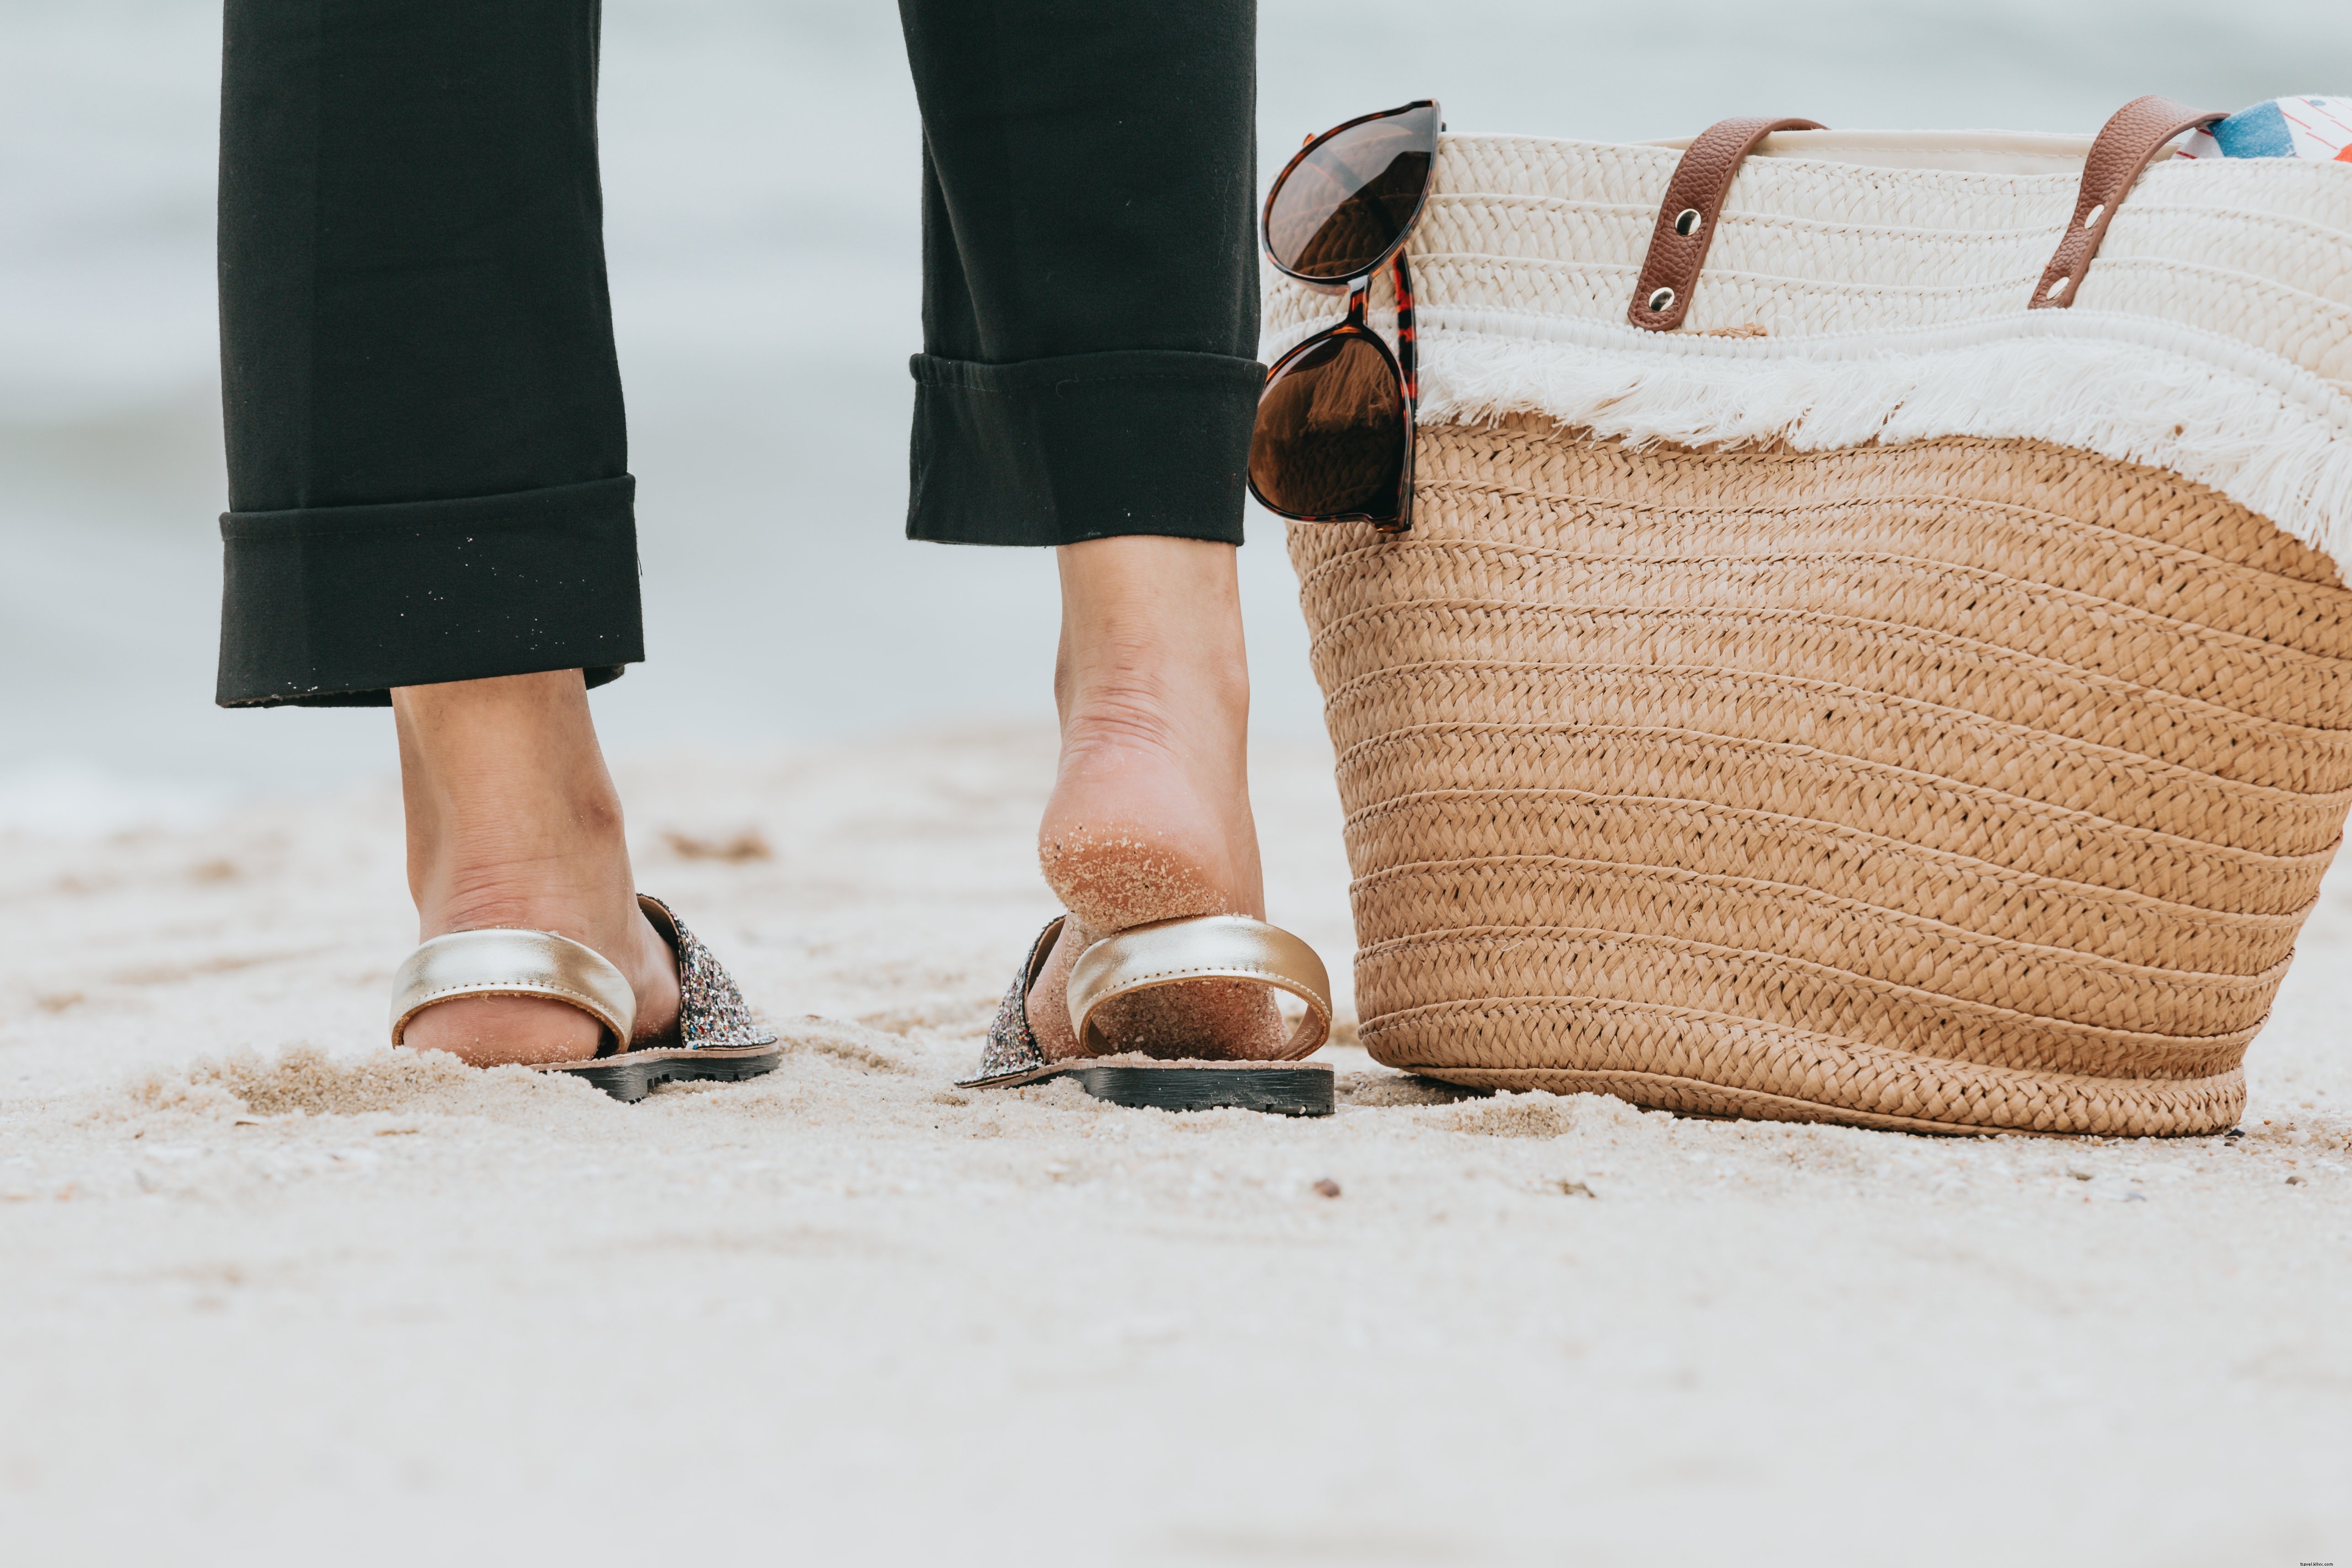 Photo d une jambe debout sur une plage de sable à côté d un sac de plage Photo 